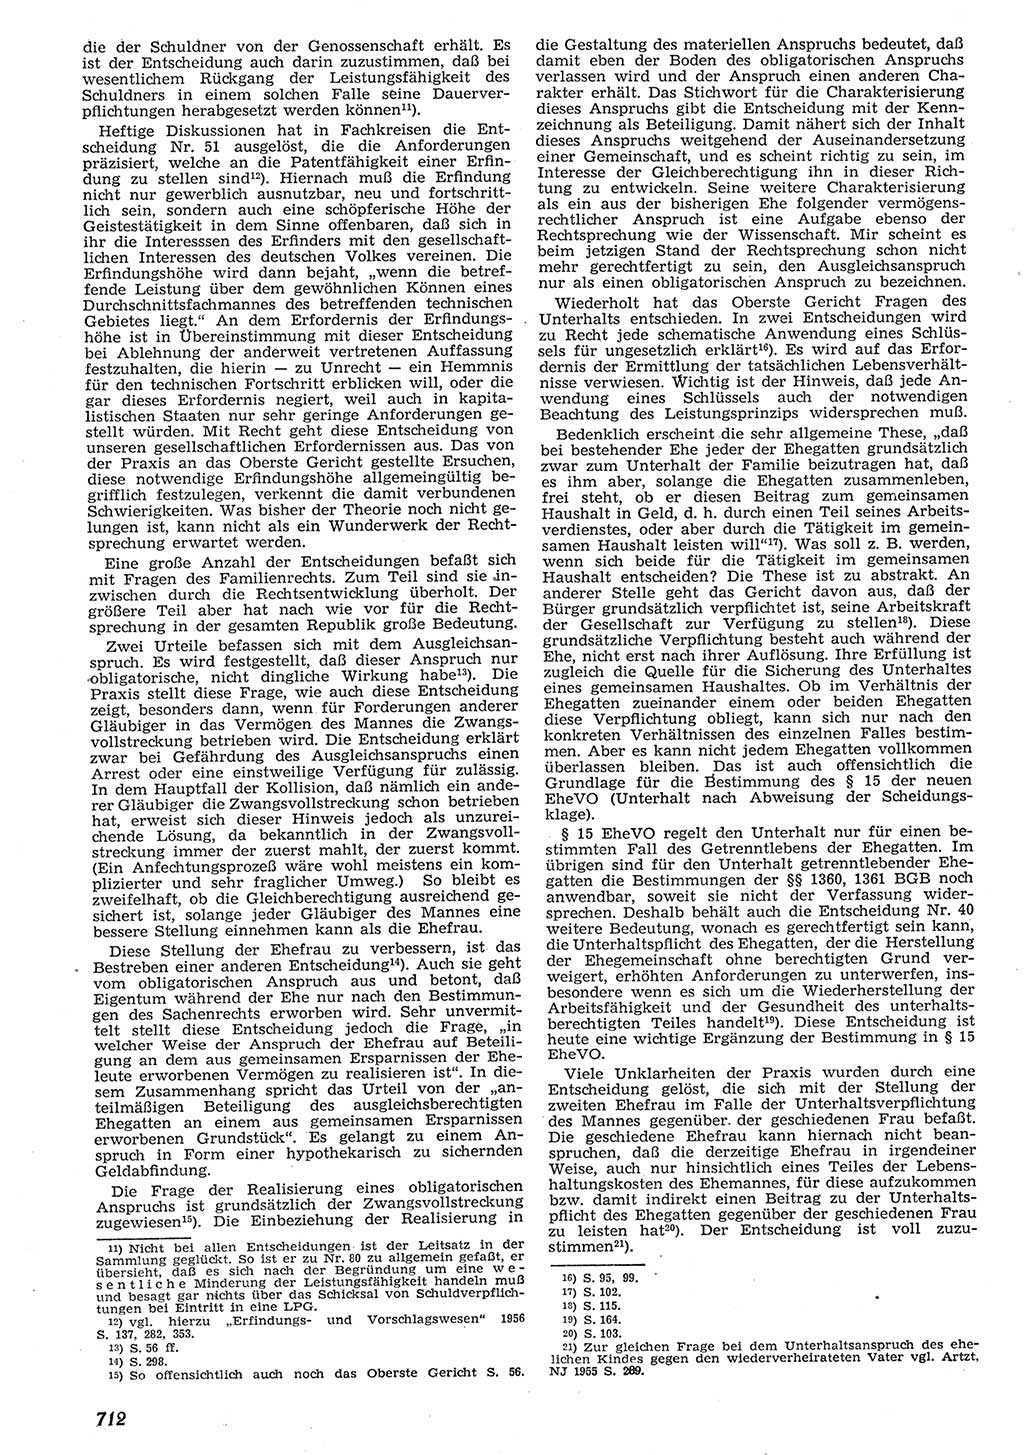 Neue Justiz (NJ), Zeitschrift für Recht und Rechtswissenschaft [Deutsche Demokratische Republik (DDR)], 10. Jahrgang 1956, Seite 712 (NJ DDR 1956, S. 712)